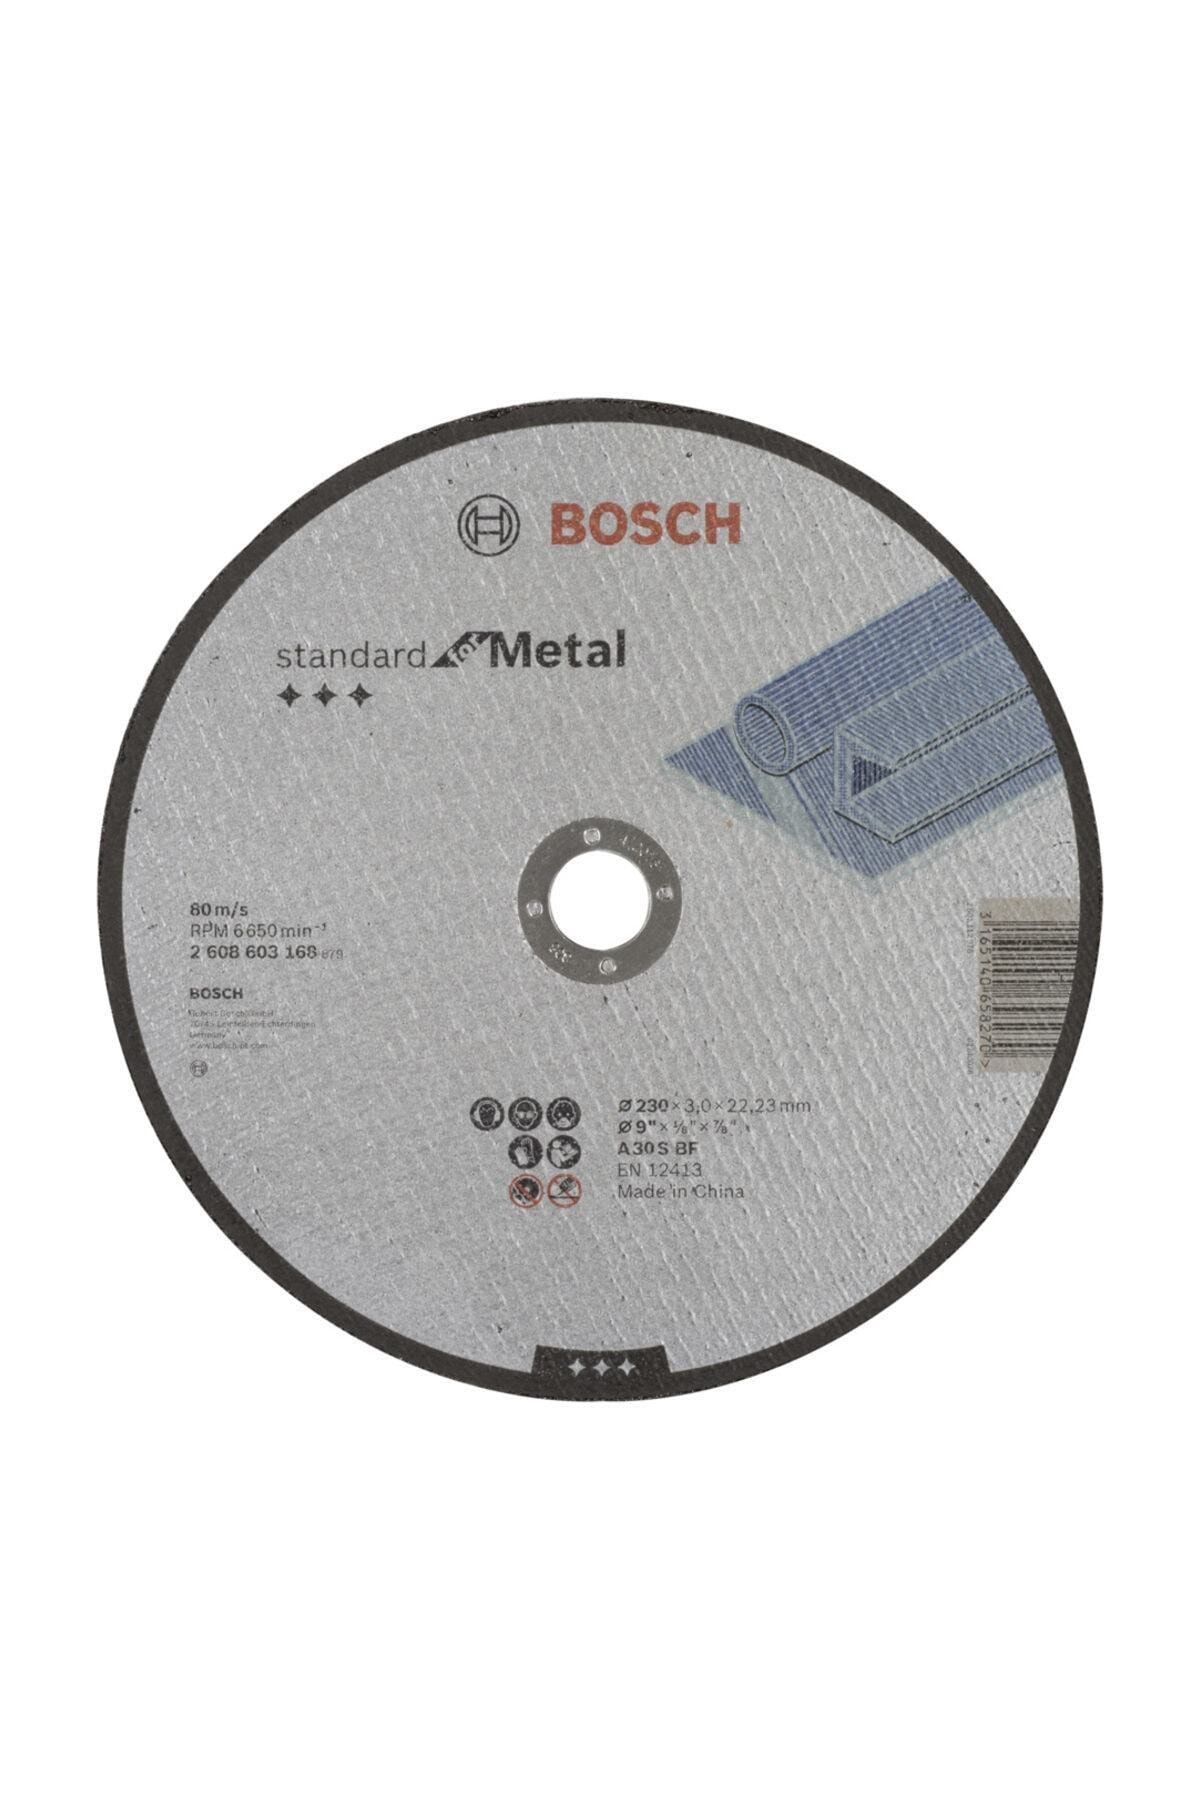 Bosch 230*3,0 Mm Standard For Metal Düz Aşındırıcı Disk